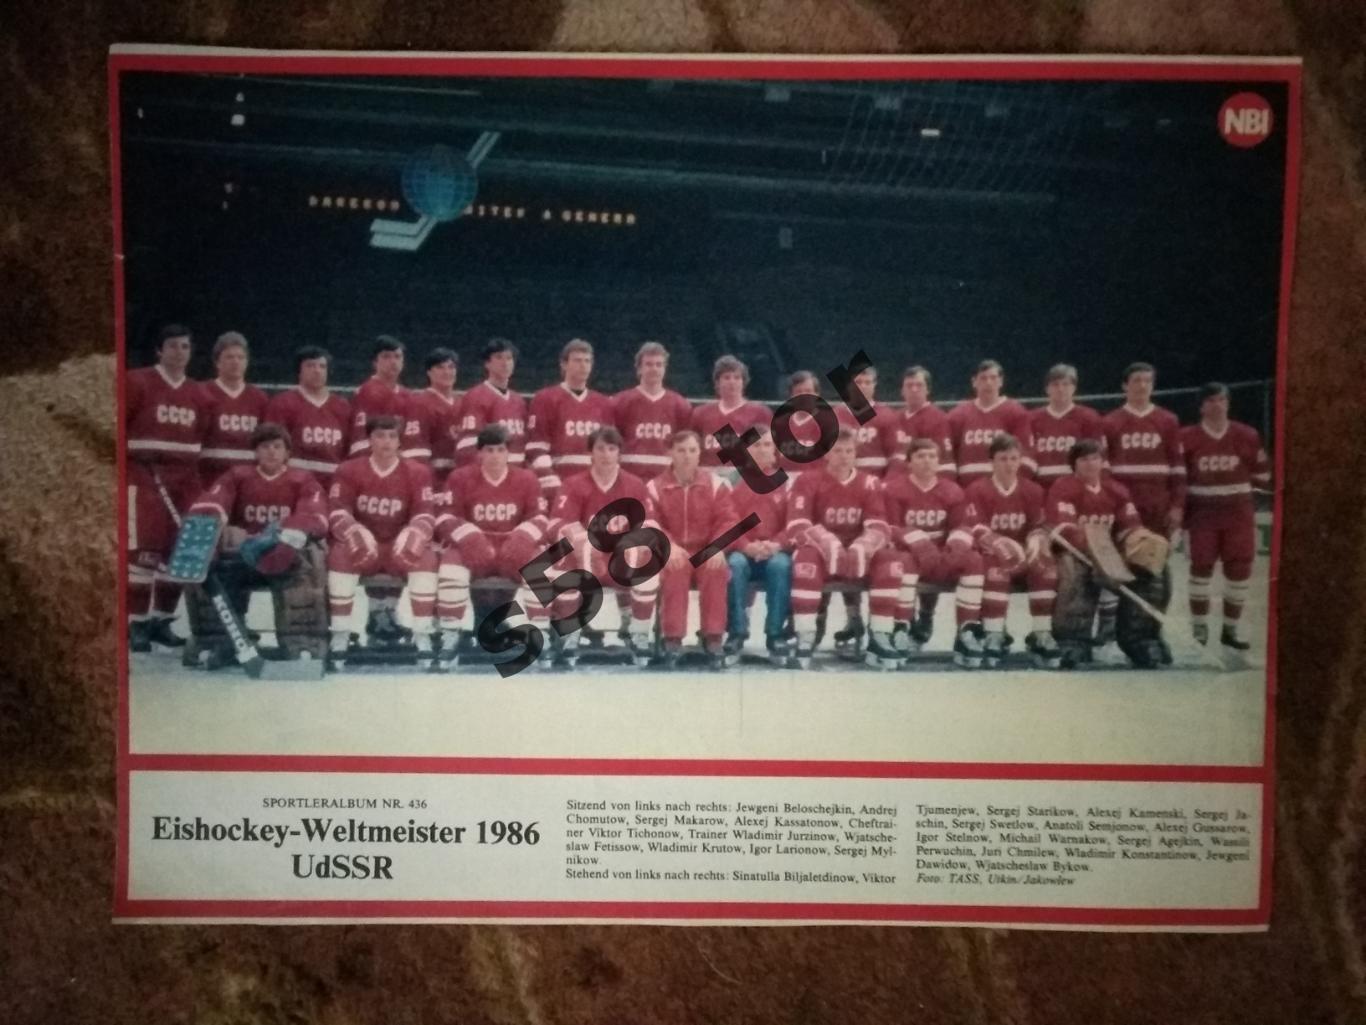 Постер.Хоккей.Сборная СССР - чемпион мира 1986.Журнал NBI (ГДР).